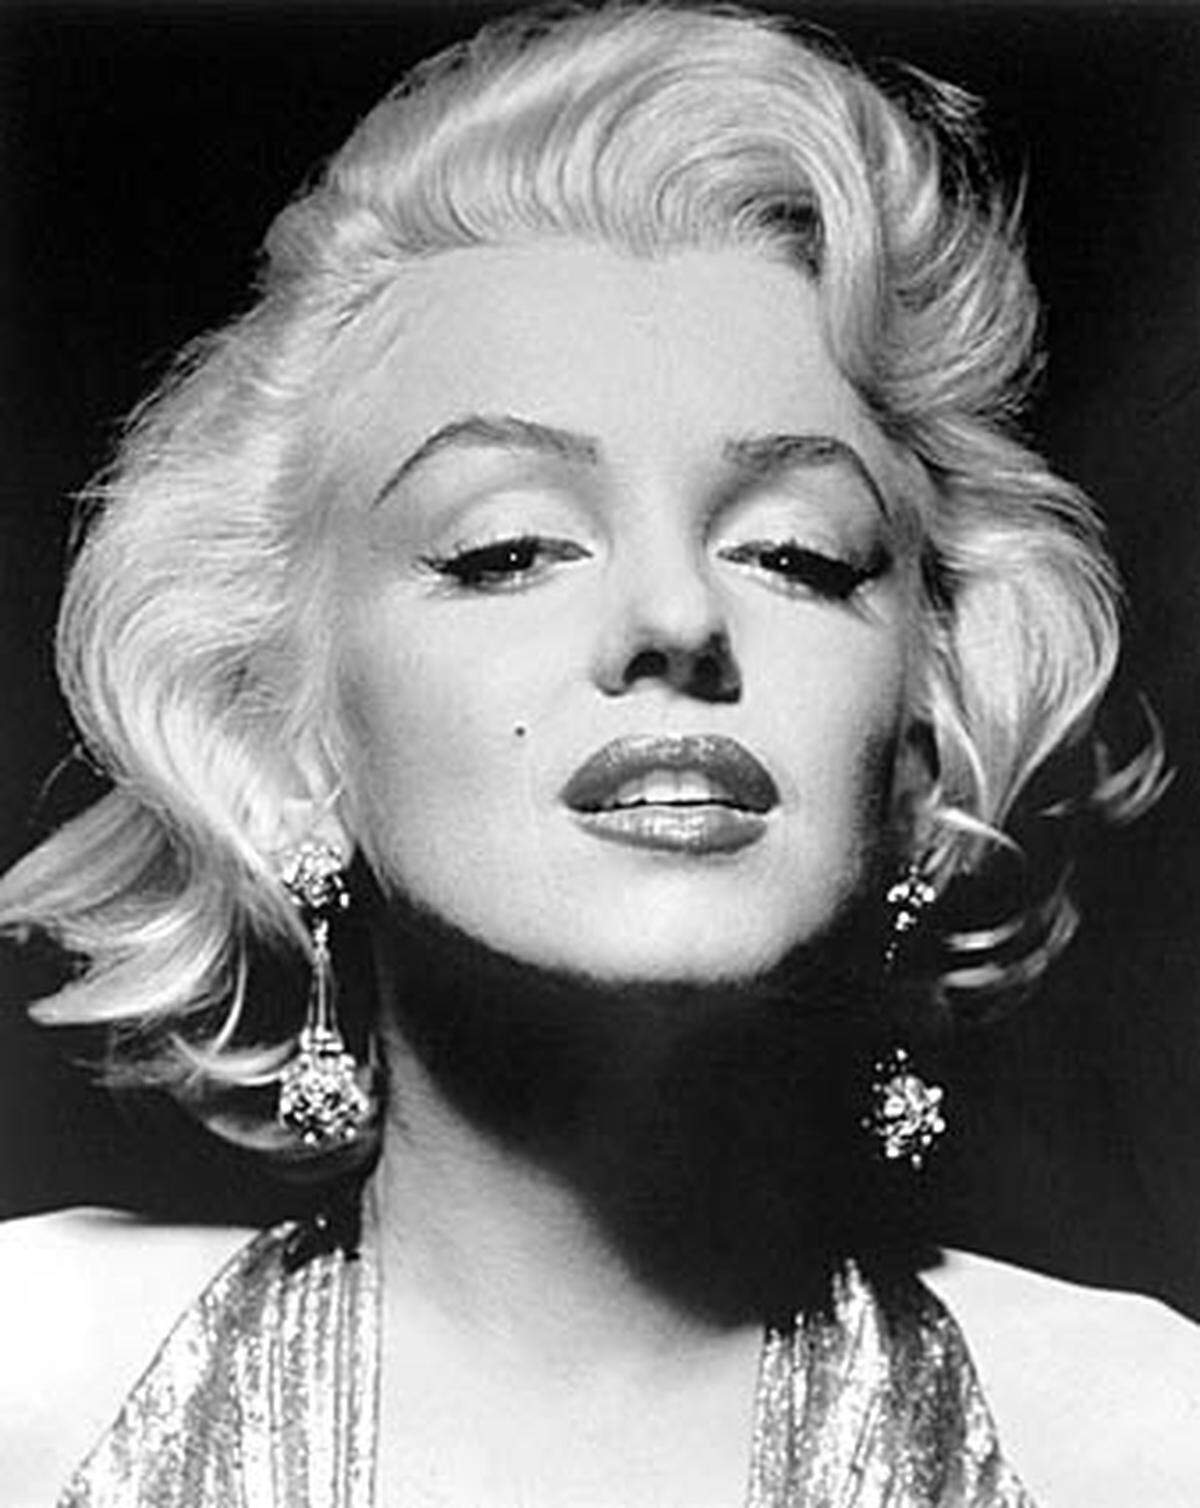 Gelernt hat Madonna von der Besten: Küsse können keine Miete zahlen, sagt Marilyn Monroe 1953 in "Blondinen bevorzugt". Männer werden kalt und junge Frauen leider alt. Das einzige, was für die Ewigkeit bleibe, seien Diamanten. "Diamonds are a girl's best friend", folgerte sie. Hätte man sich doch damals welche zugelegt.